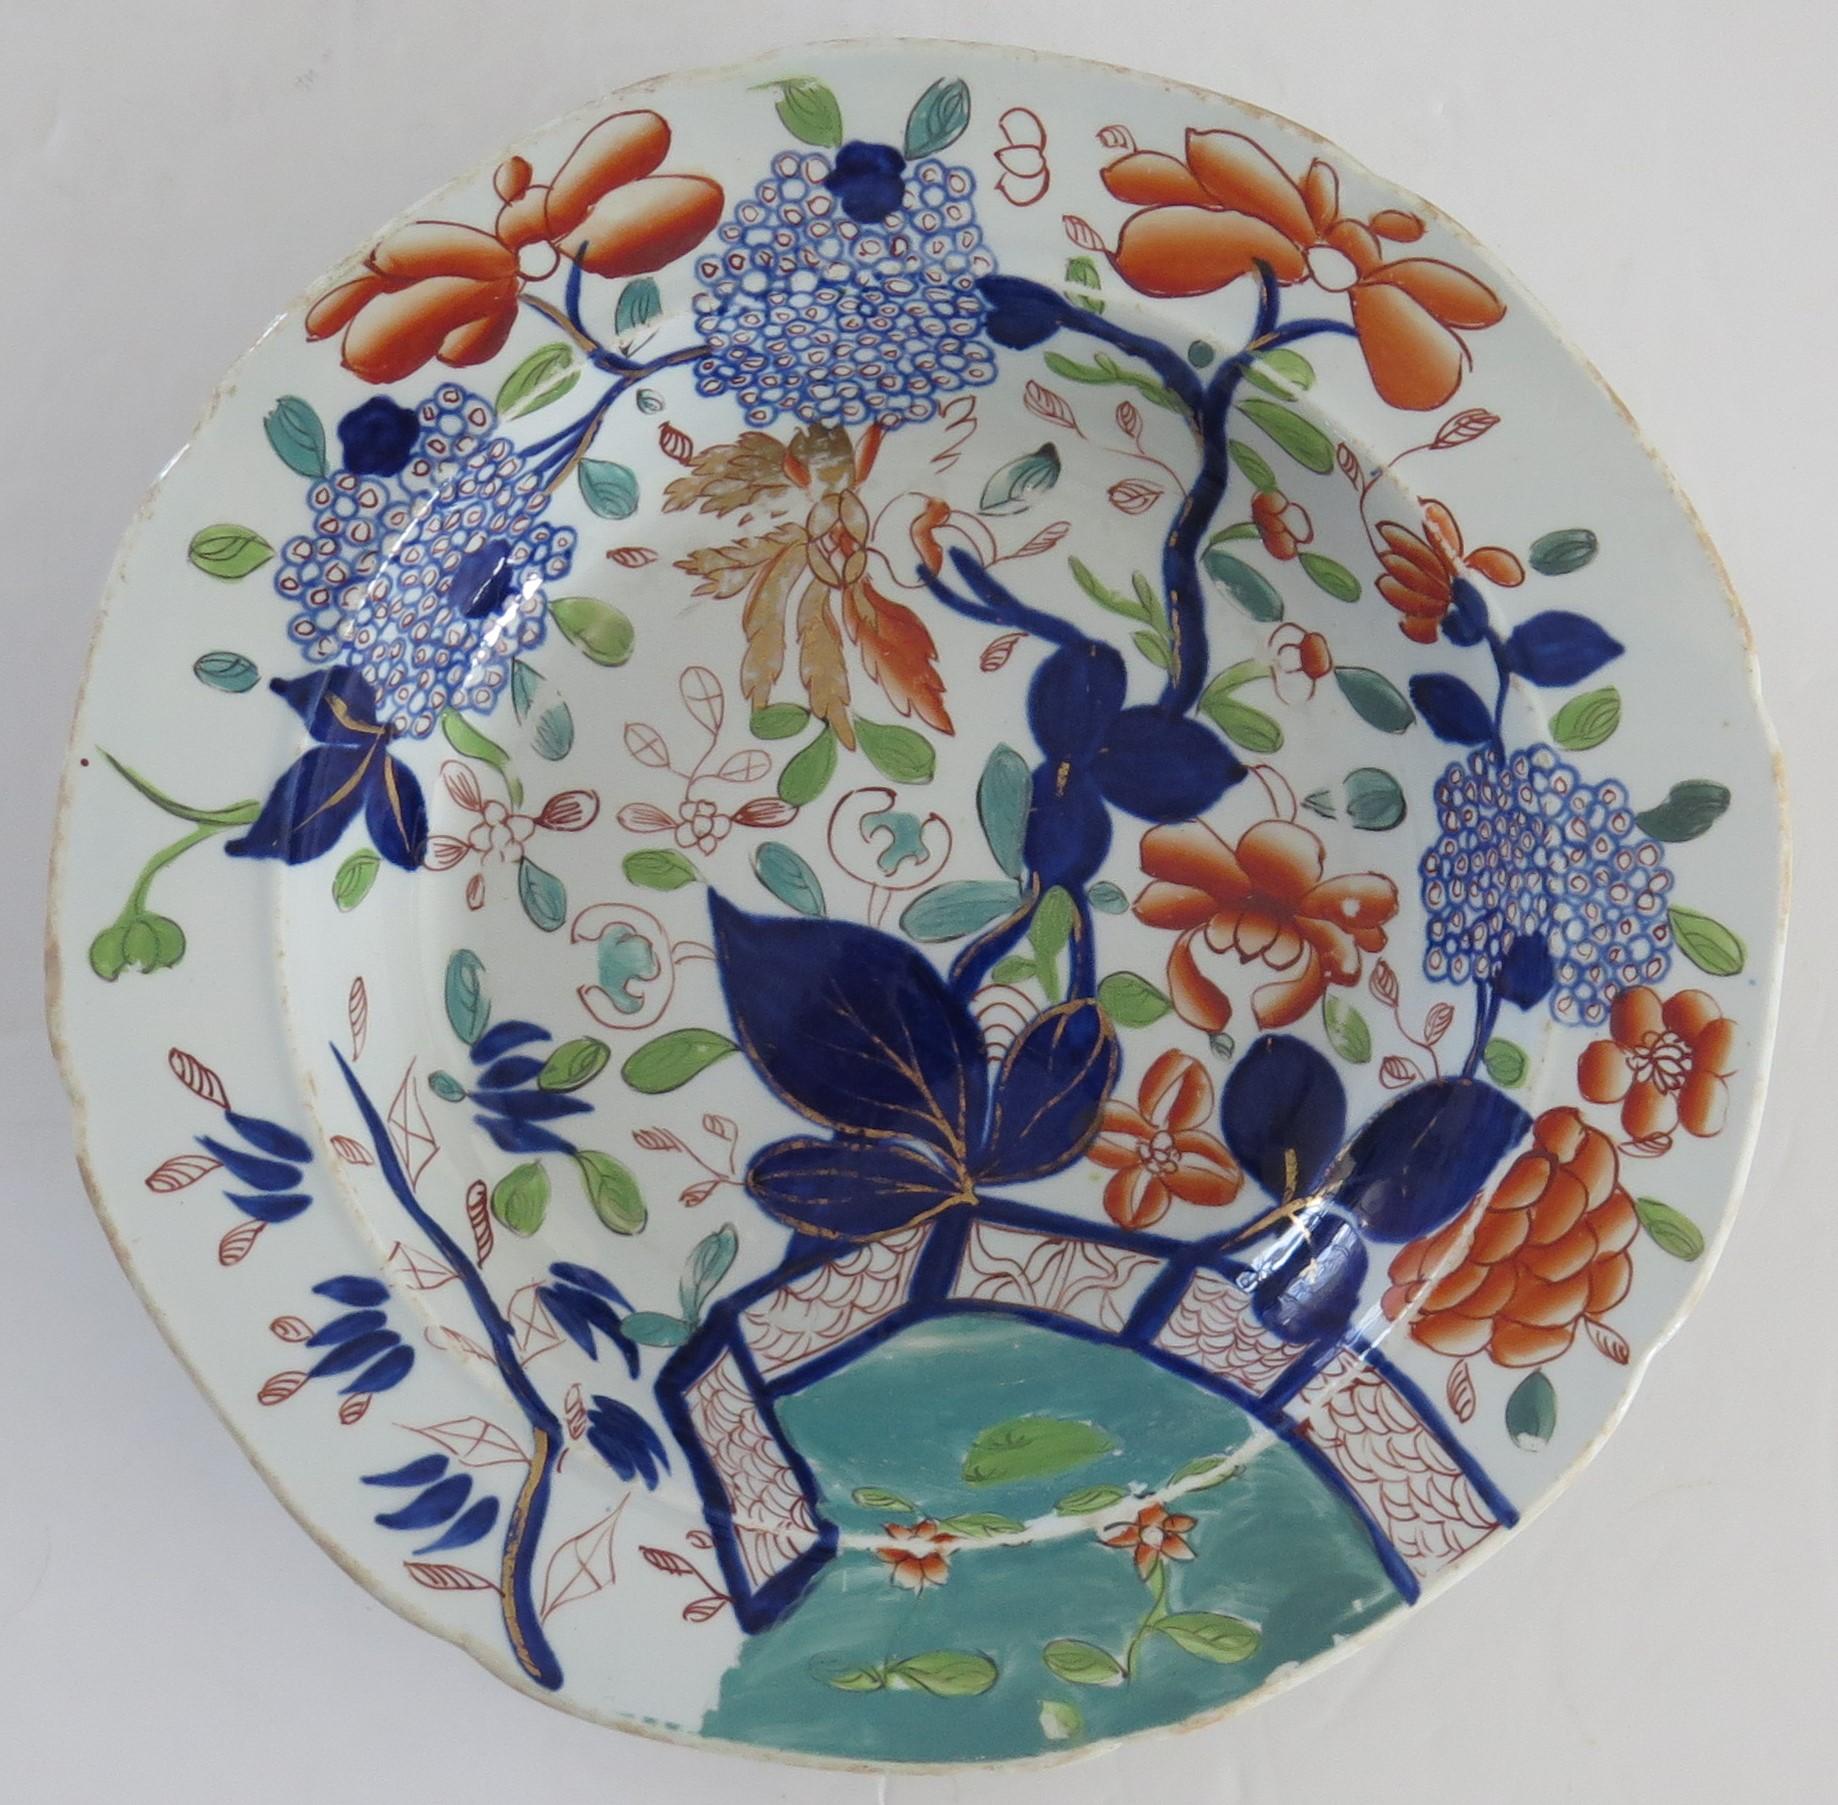 Dies ist eine sehr gute frühe Mason's Eisenstein Keramik Suppenschüssel oder tiefen Teller von Hand in der Fence, Blue Leaf & Lilac Muster gemalt,  hergestellt von der Mason's Factory in Lane Delph, Staffordshire, England, ca. 1813-1820.

Der Teller